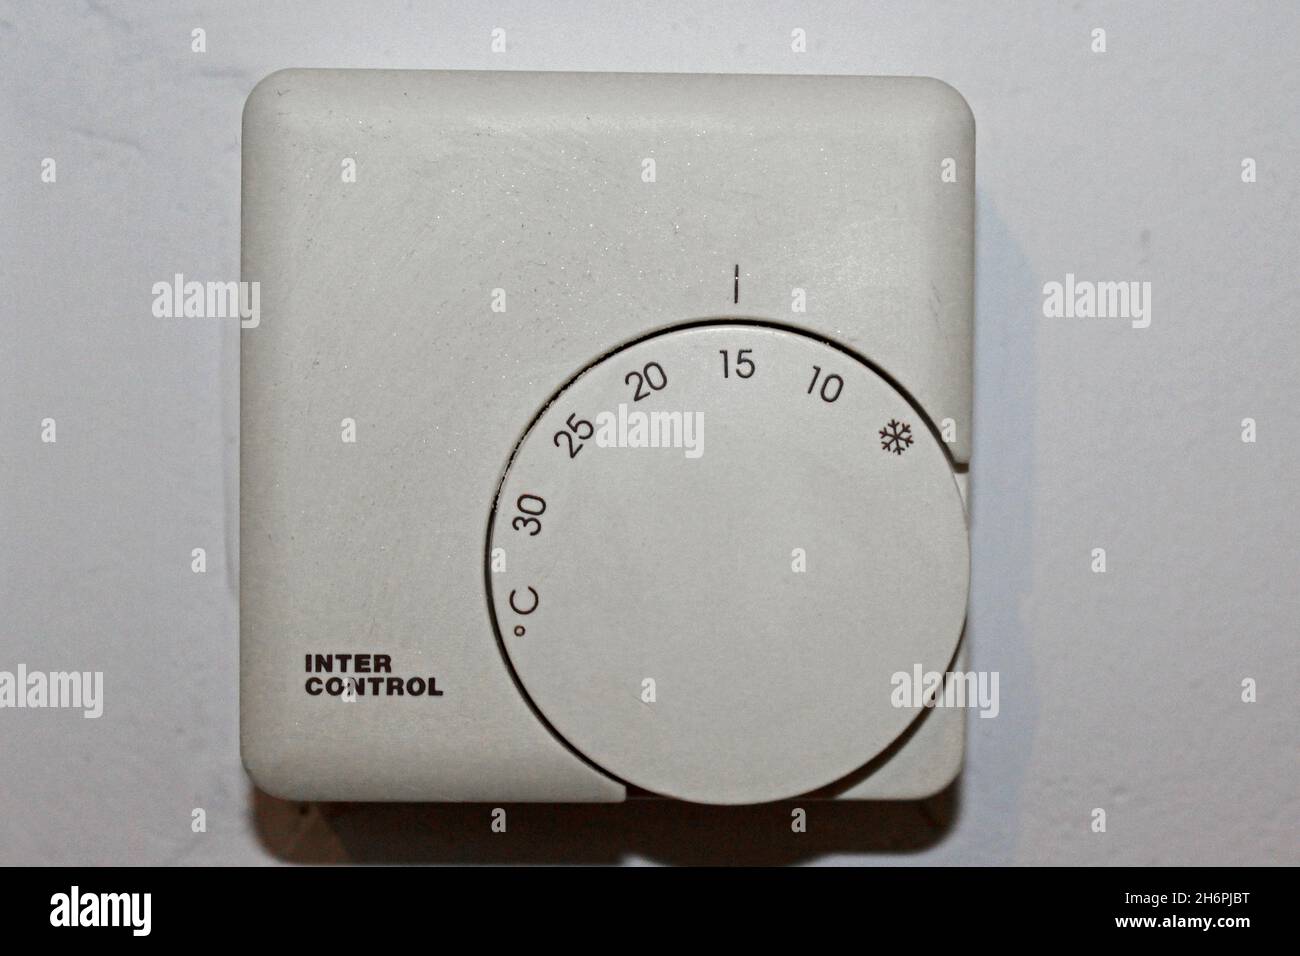 Weißer Thermostat zur Wärmeregulierung von 0 bis 30 Grad einstellbar, in einer Wohnung an einer Wand, auf 15 Grad eingestellt. Stock Photo